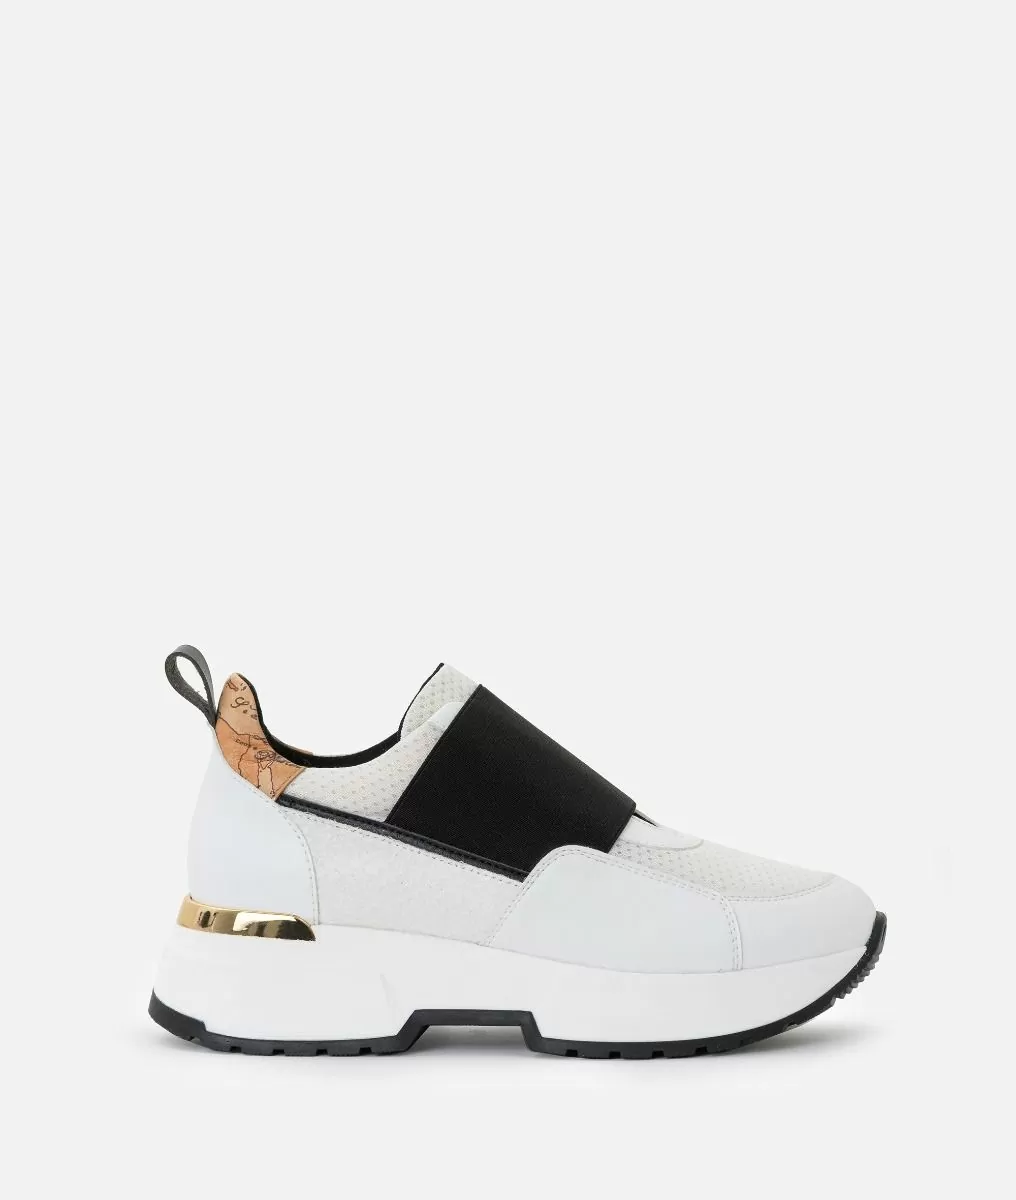 ALVIERO MARTINI PRIMA CLASSE - Sneaker con elastico in eco-leather White